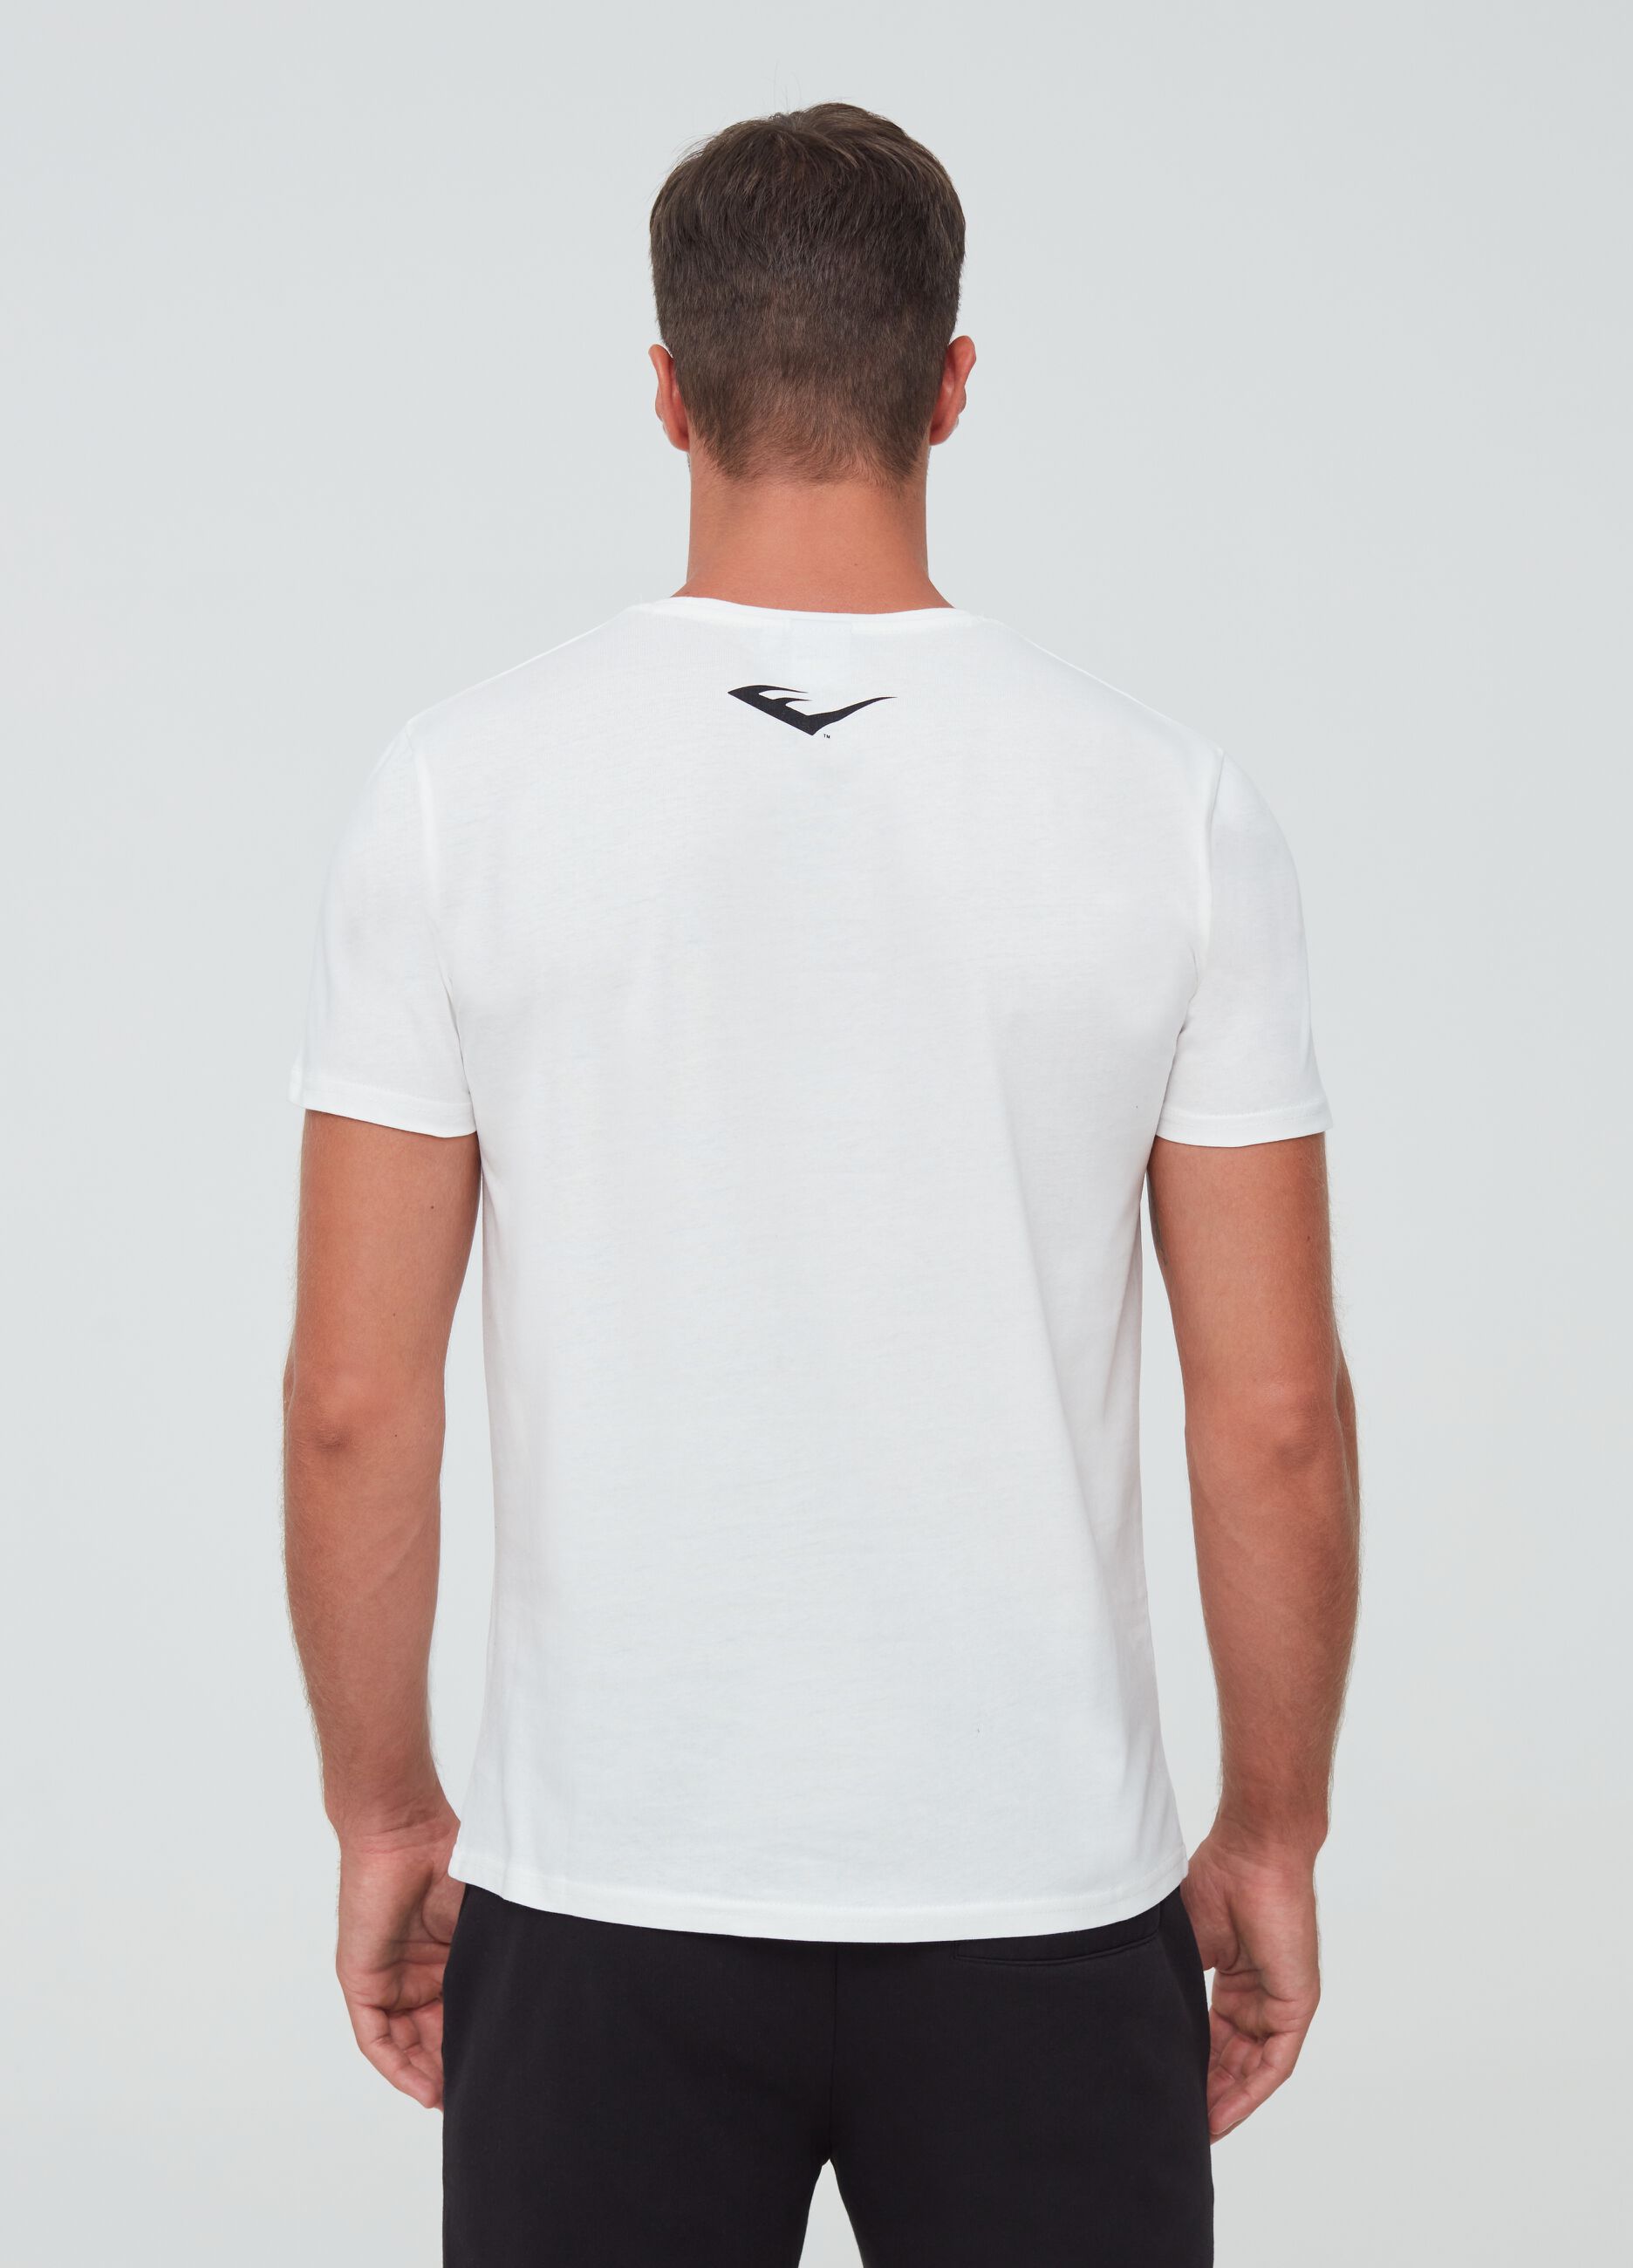 Camiseta algodón 100% con estampado Everlast